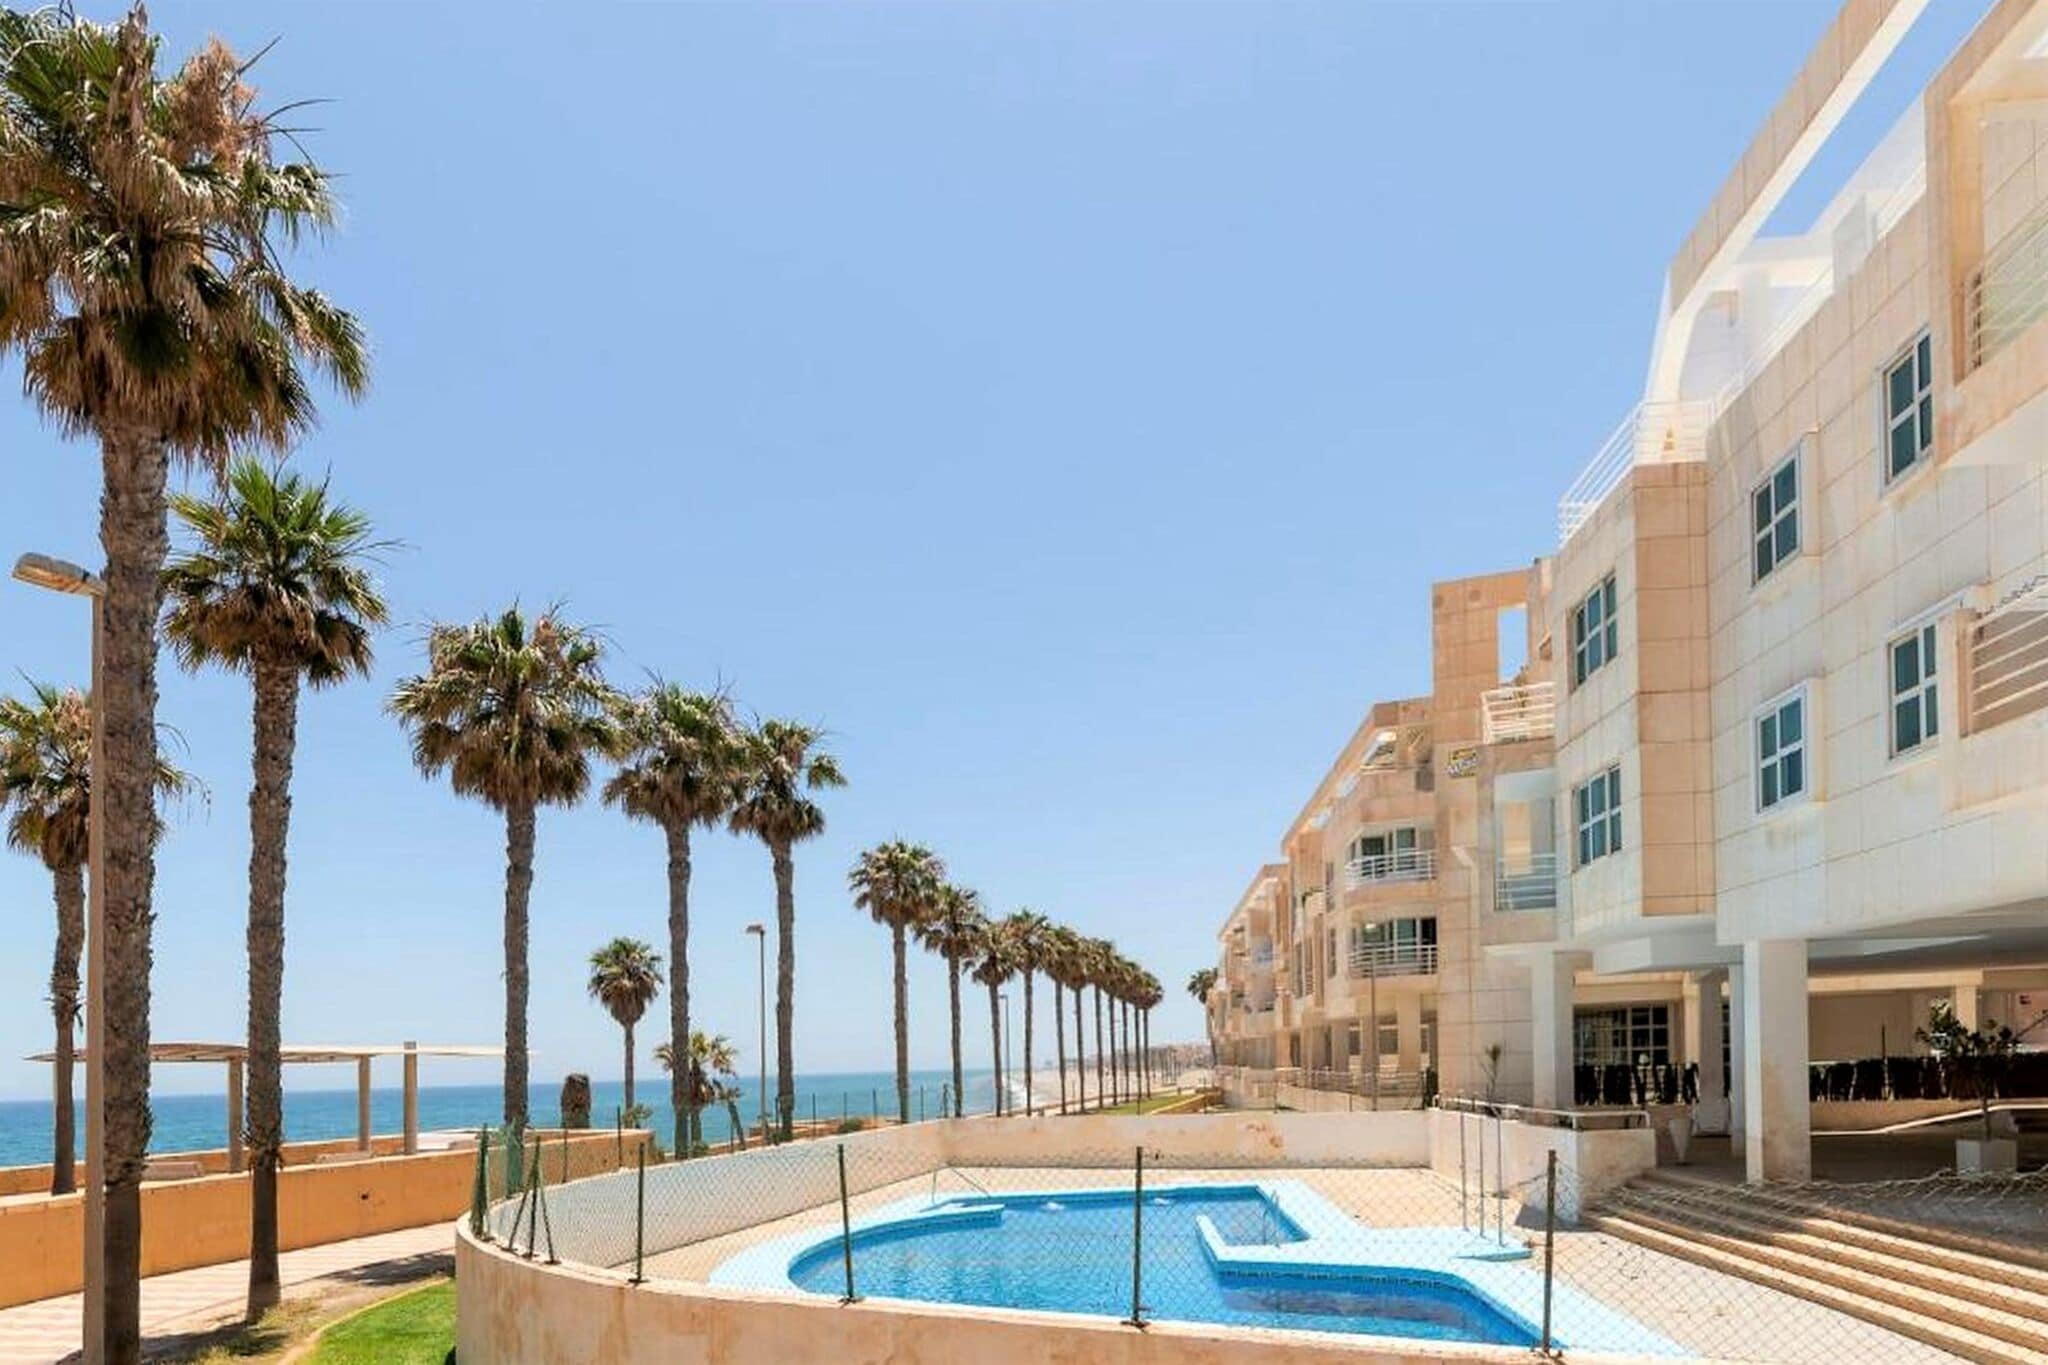 Appartement met balkon en gemeenschappelijk zwembad vlakbij de stranden